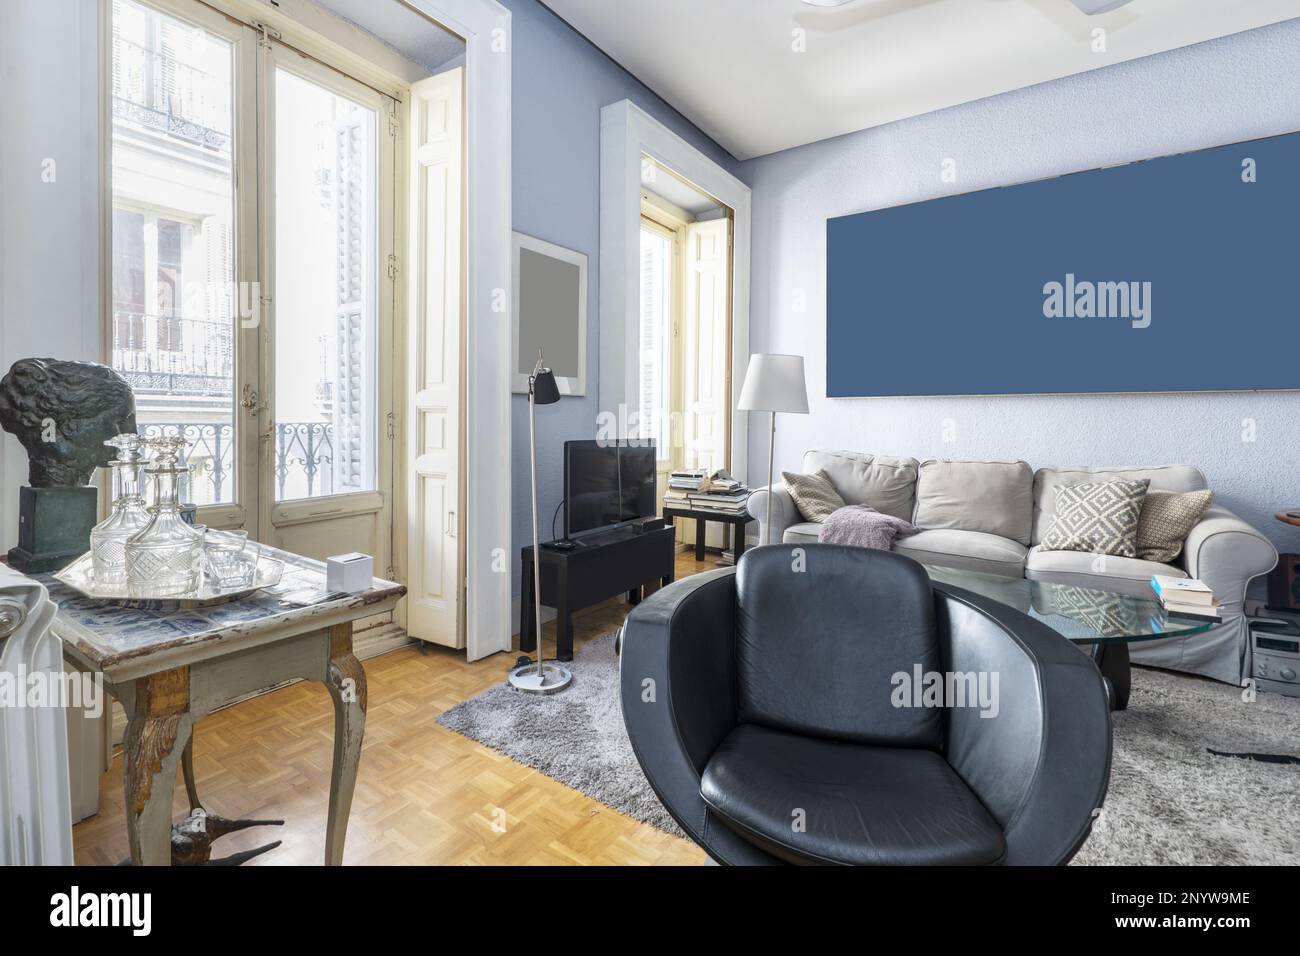 Wohnzimmer mit eklektischen Möbeln, sanften Farben und Balkon mit weißen Holzläden Stockfoto